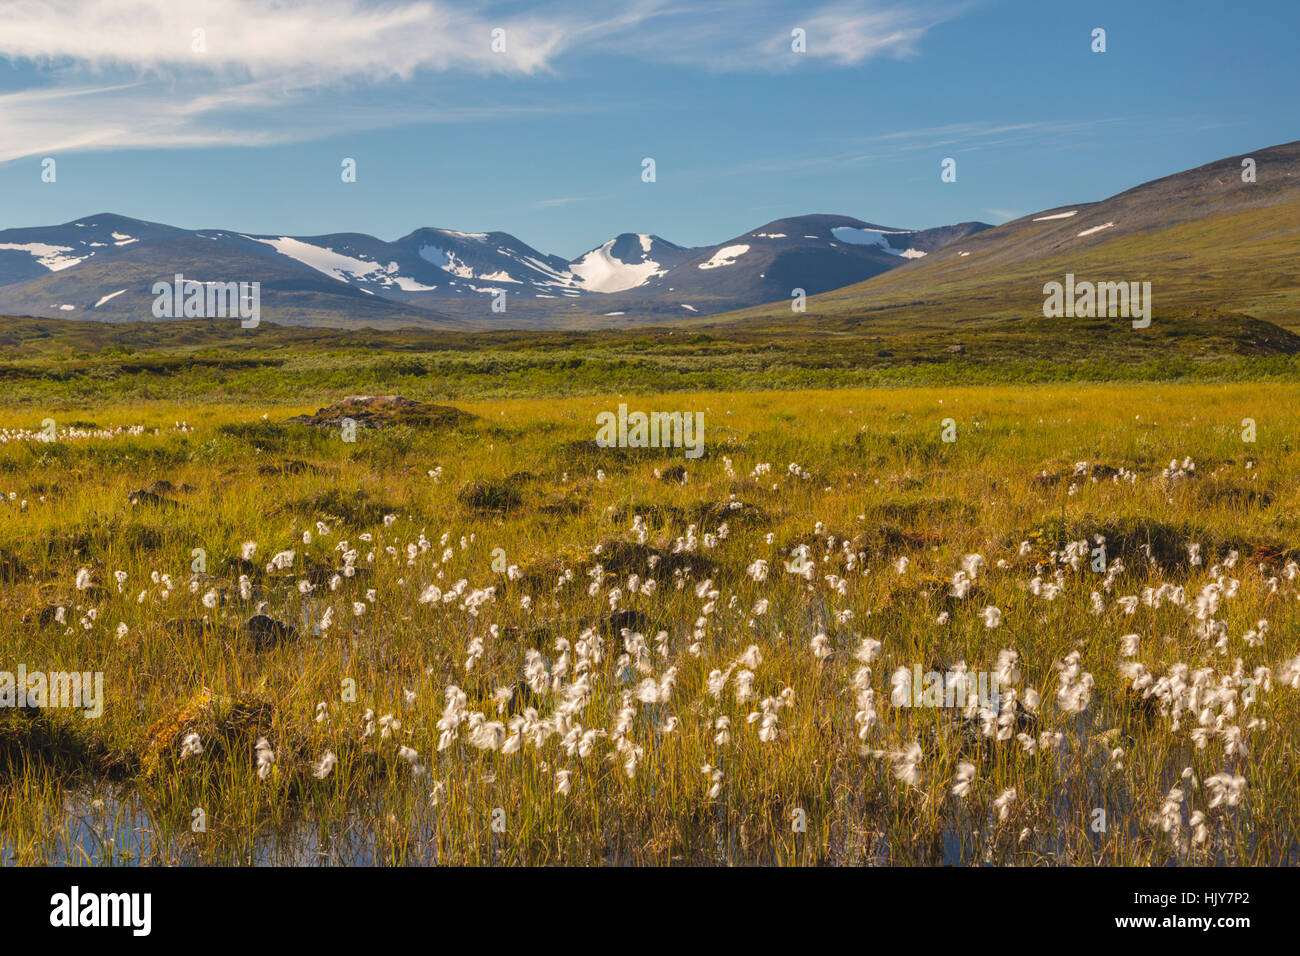 Sommer in den Bergen in Schwedisch-Lappland, Schnee auf den Bergen Wollgras  im Vordergrund, Schwedisch-Lappland, Kiruna, Schweden Stockfotografie -  Alamy